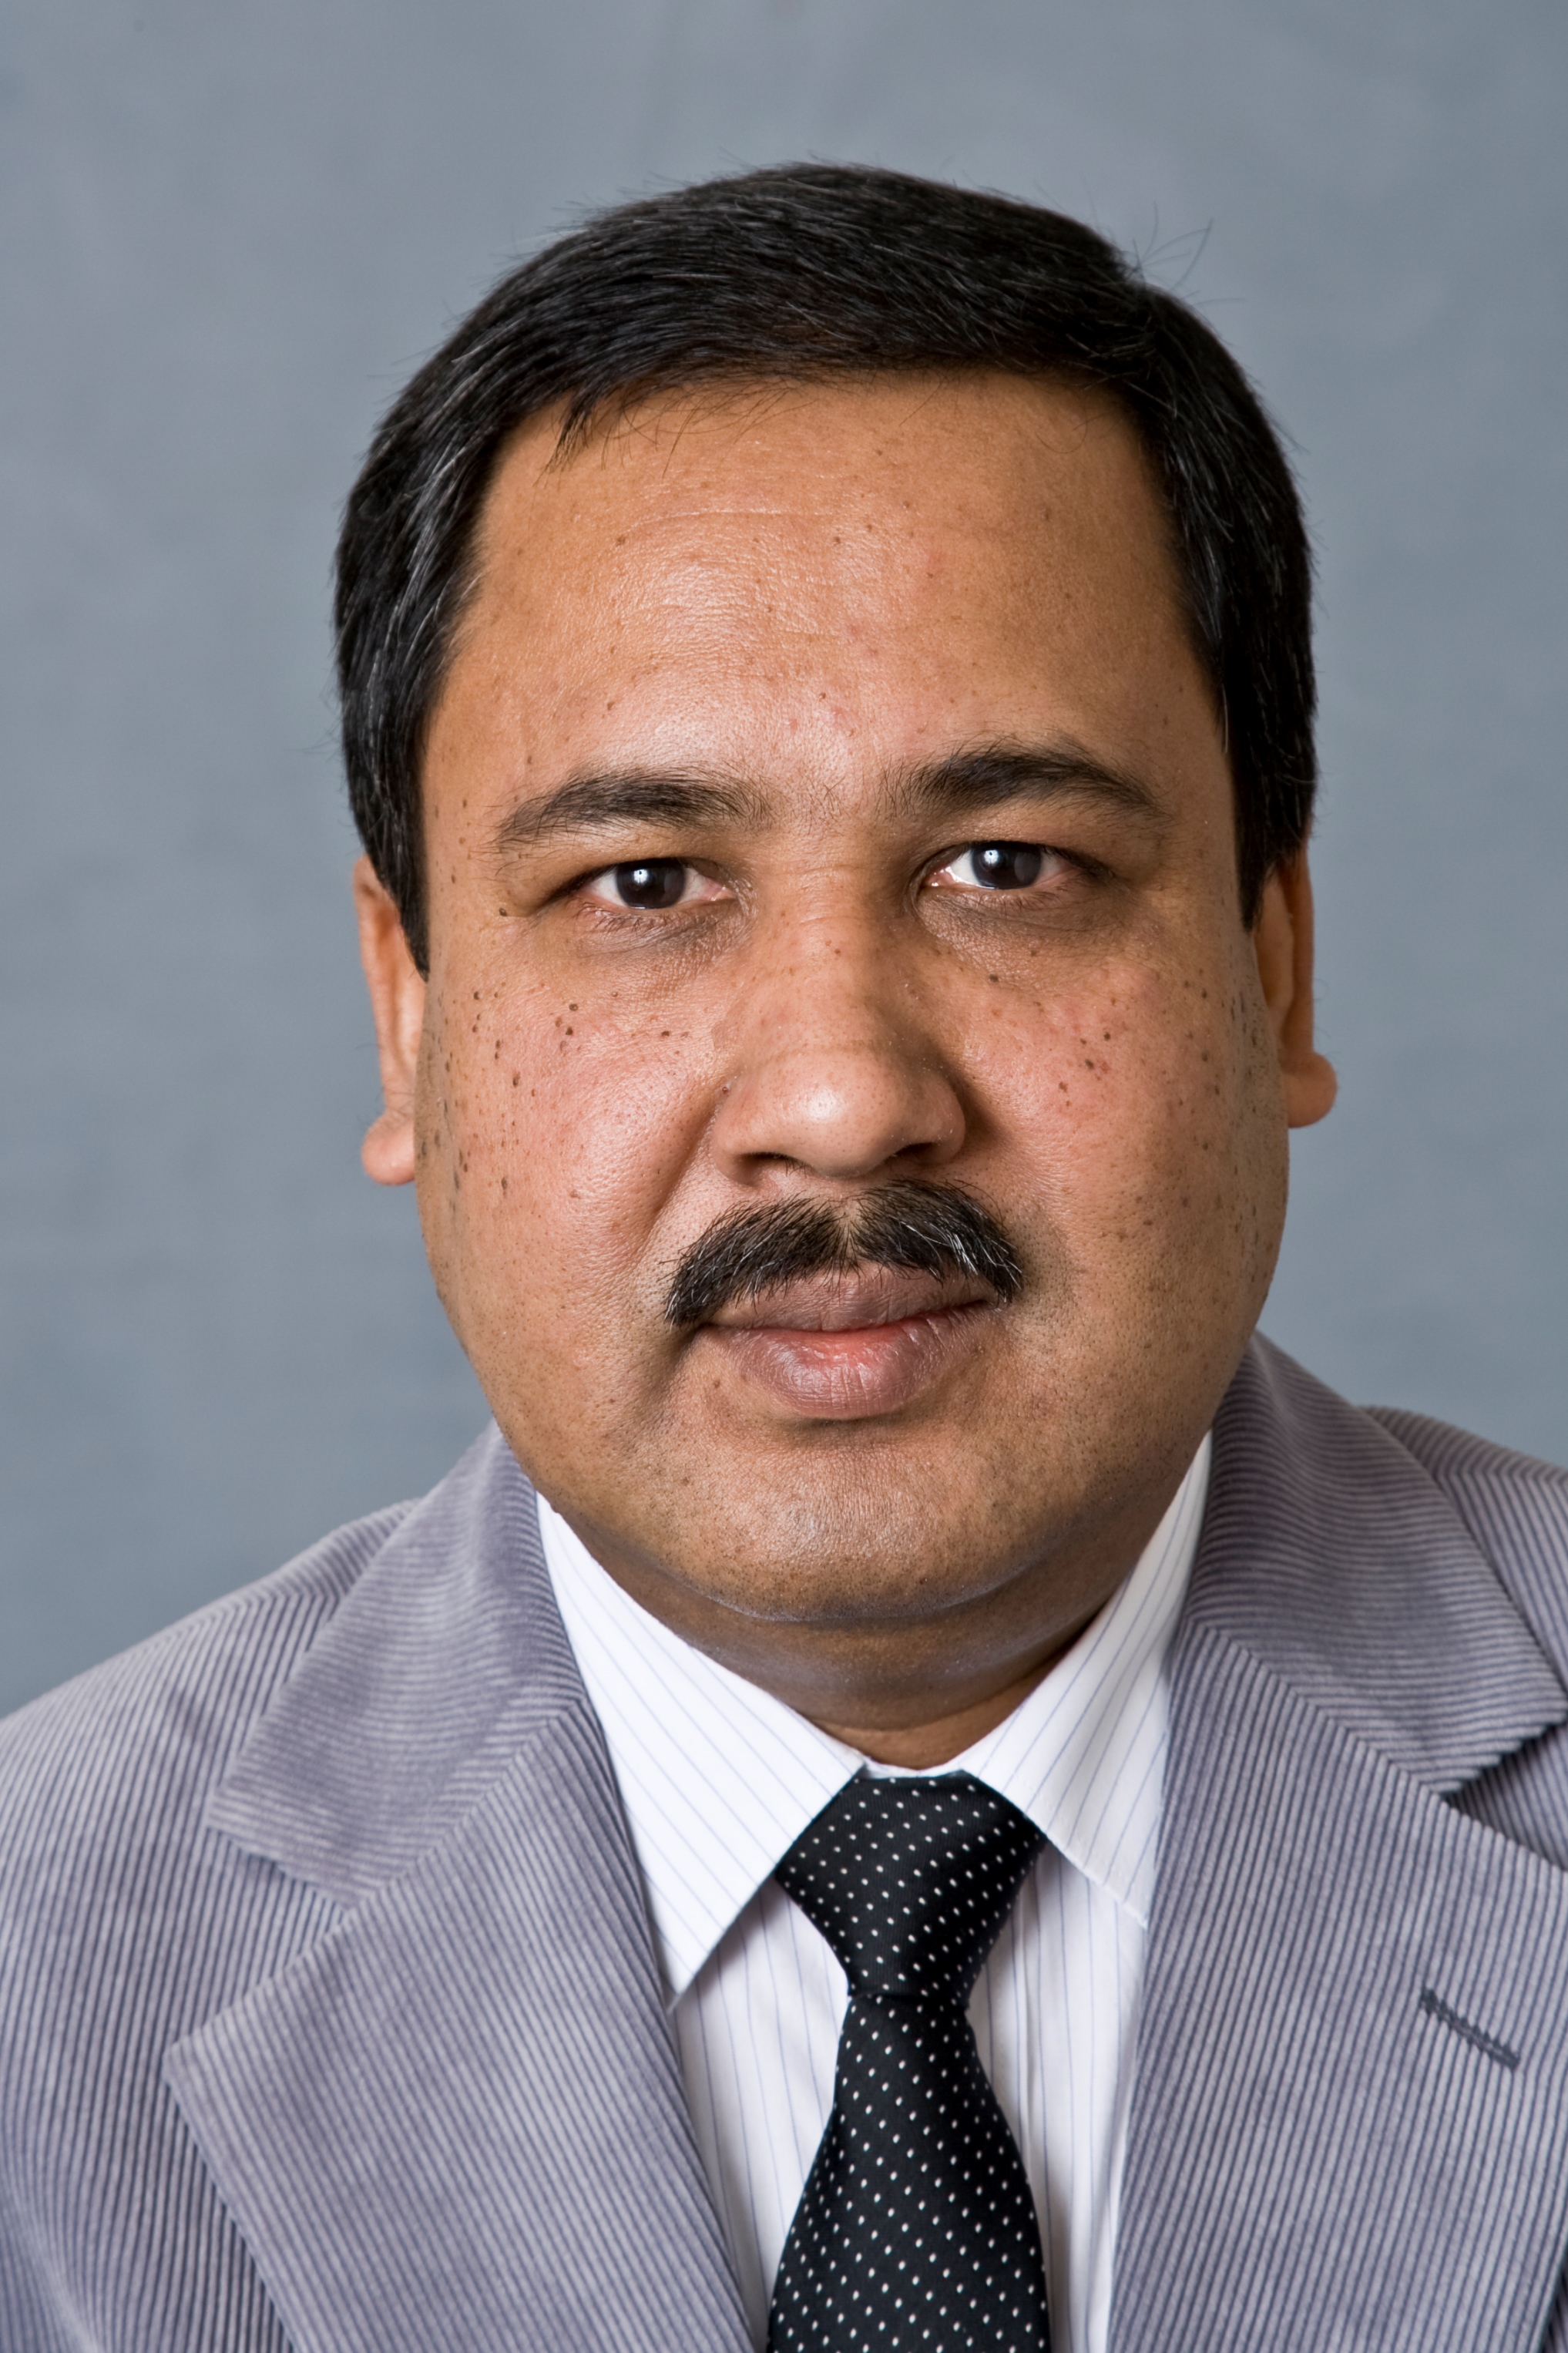 Associate Professor Abdul Sheikh